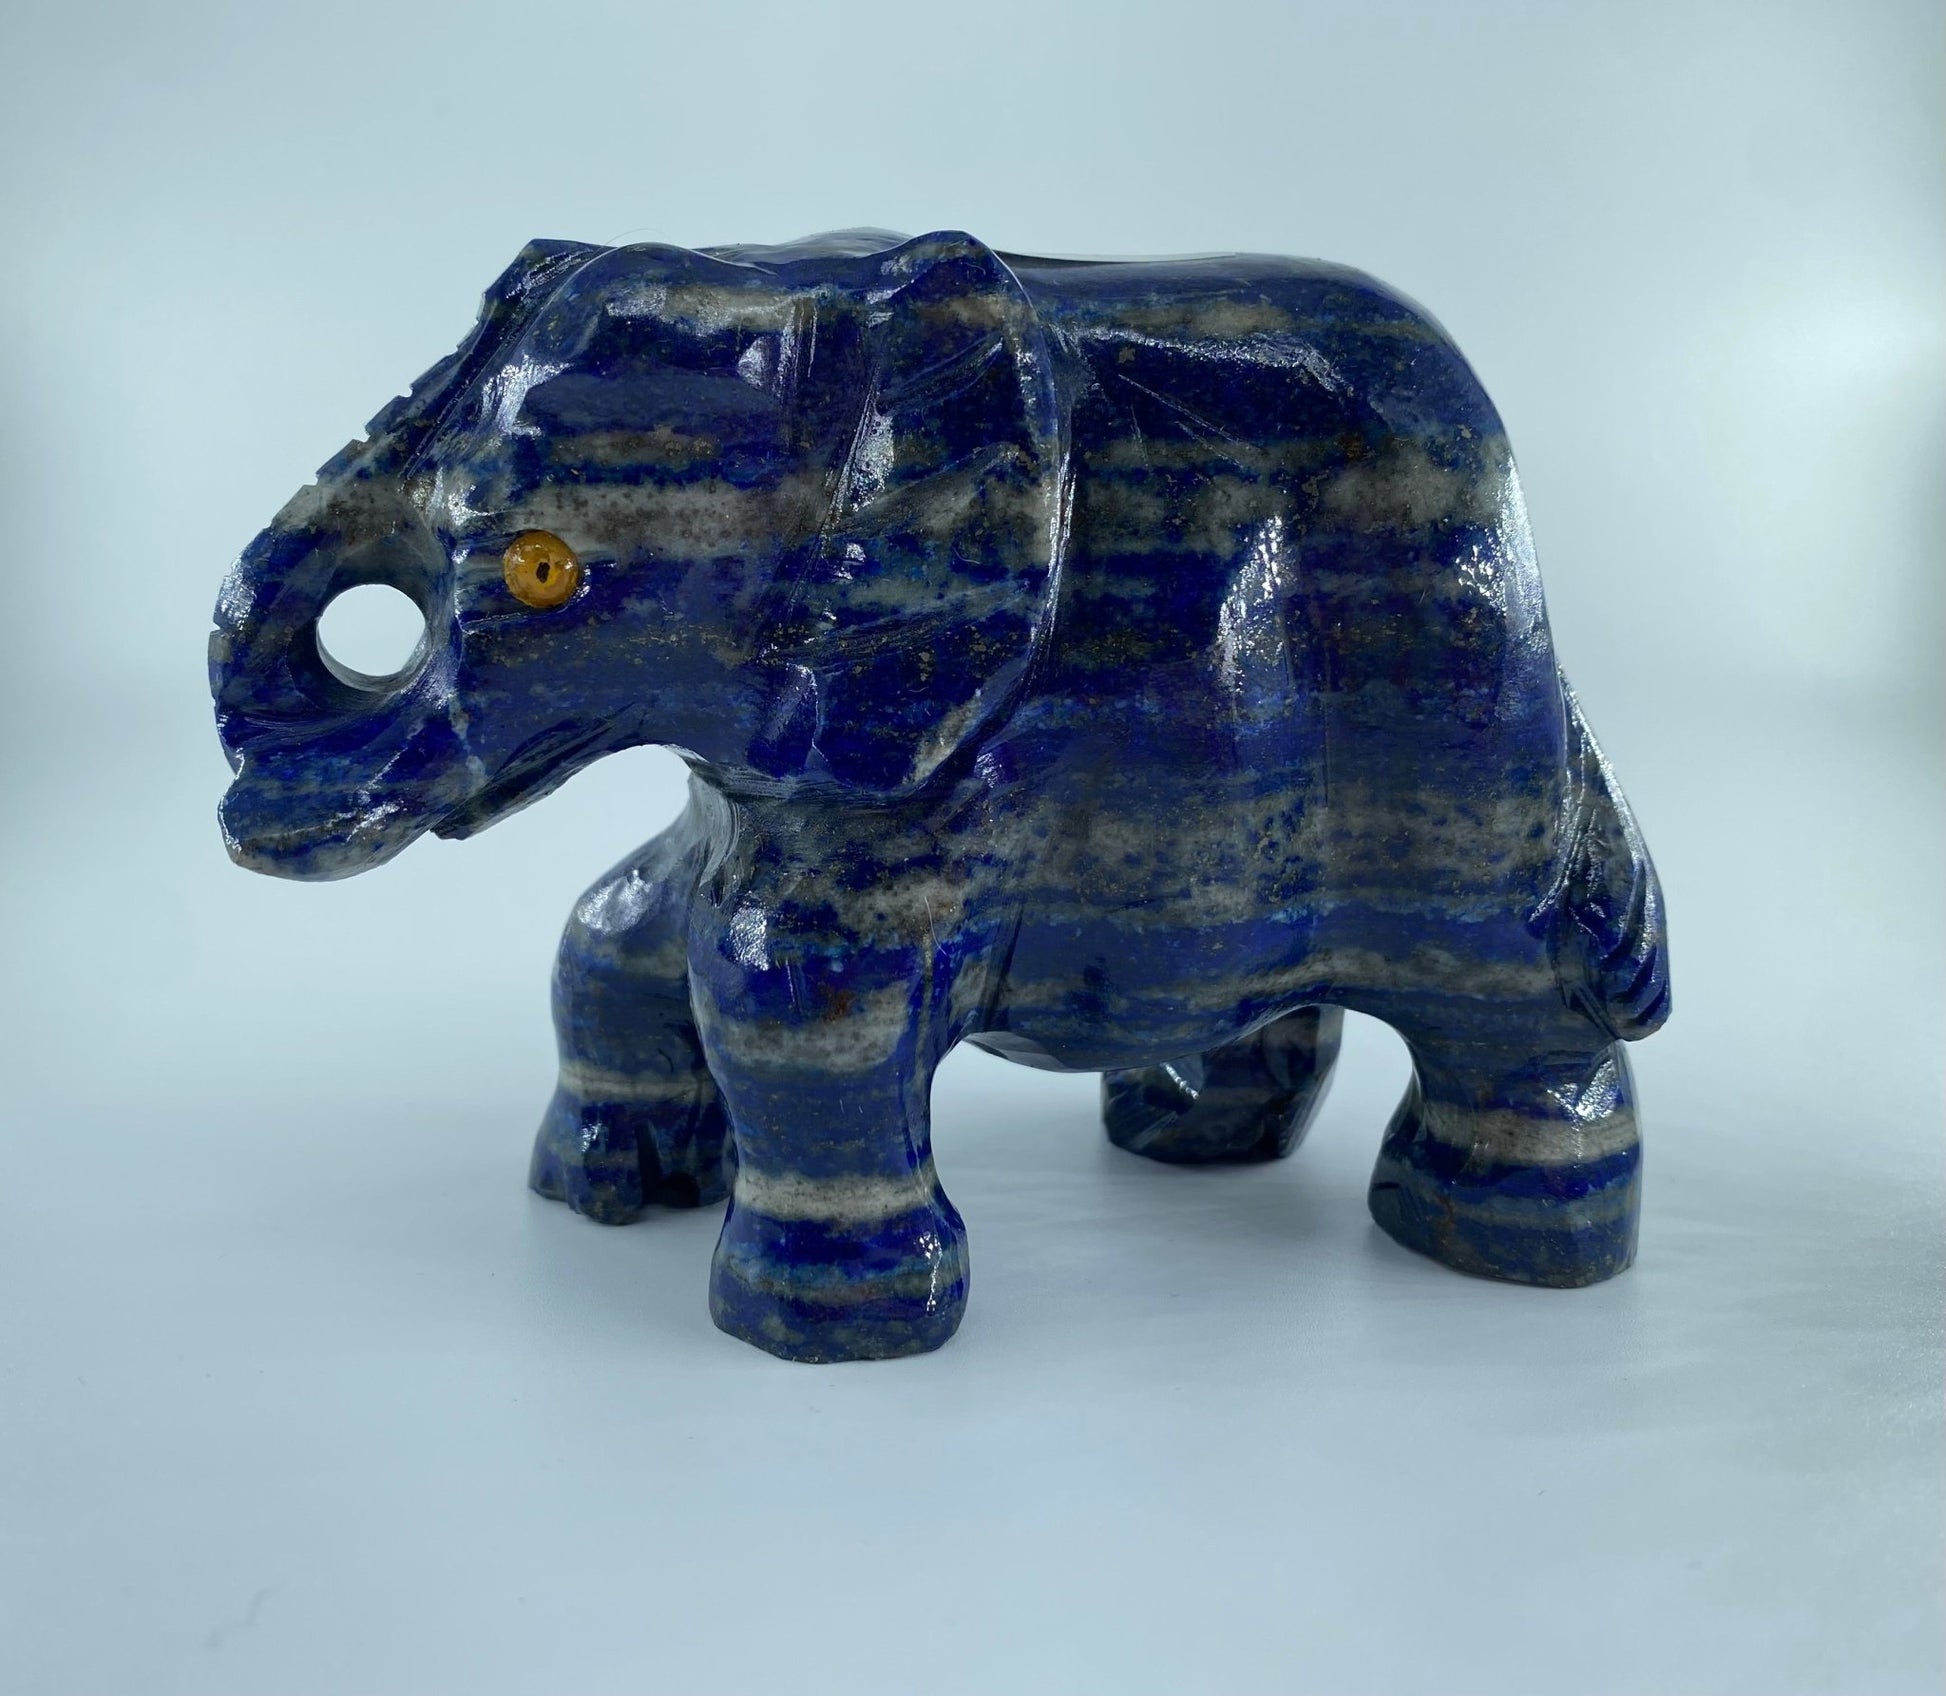 Elephant Hand Carved from Lapis Lazuli - Positive Faith Hope Love